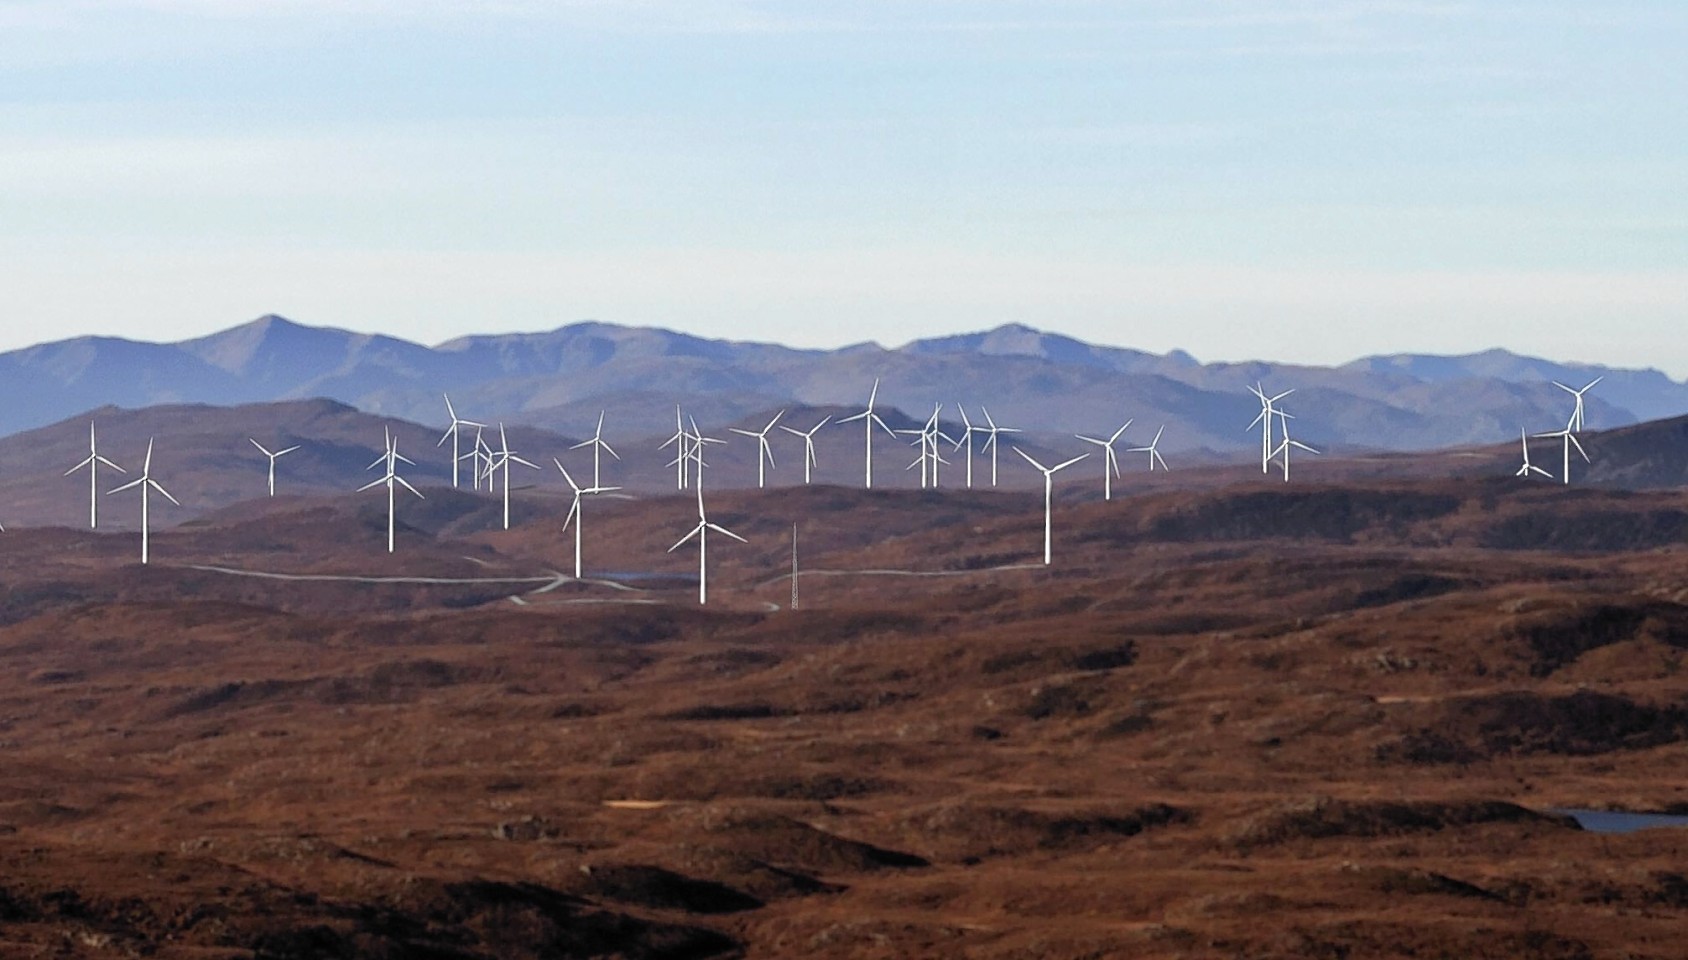 Bhlaraidh wind farm on the banks of Loch Ness.